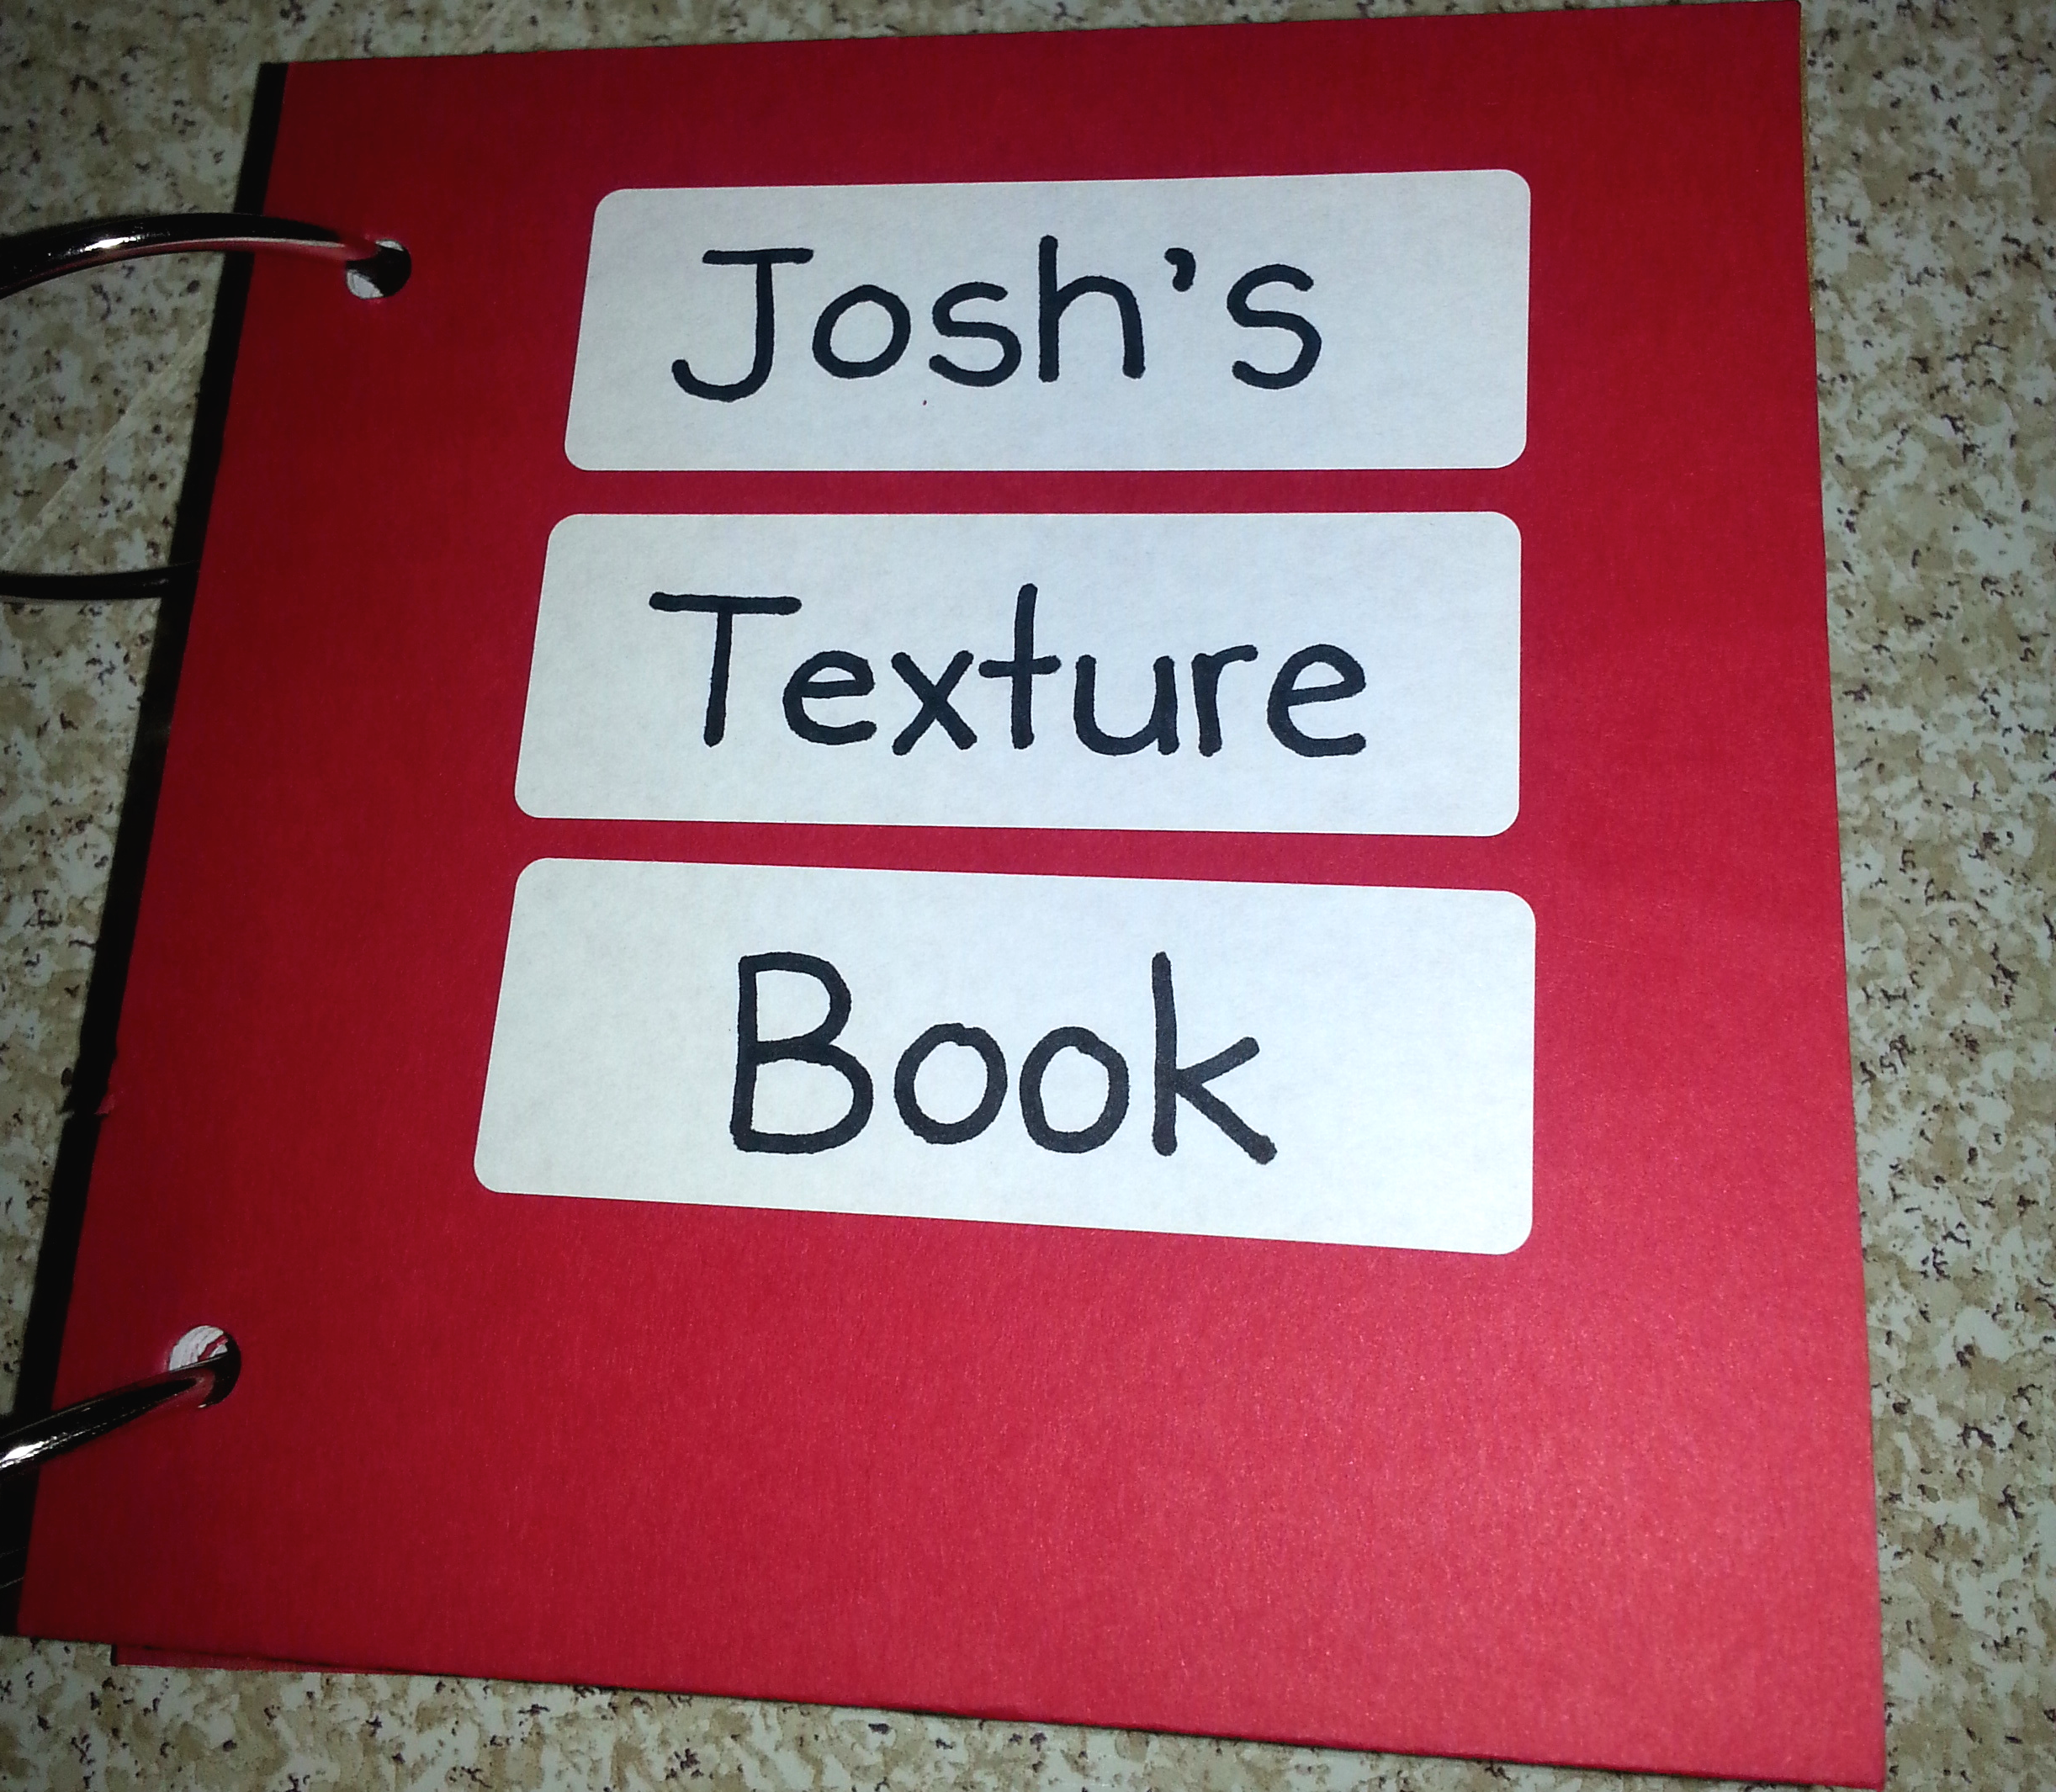 josh's texture book cover